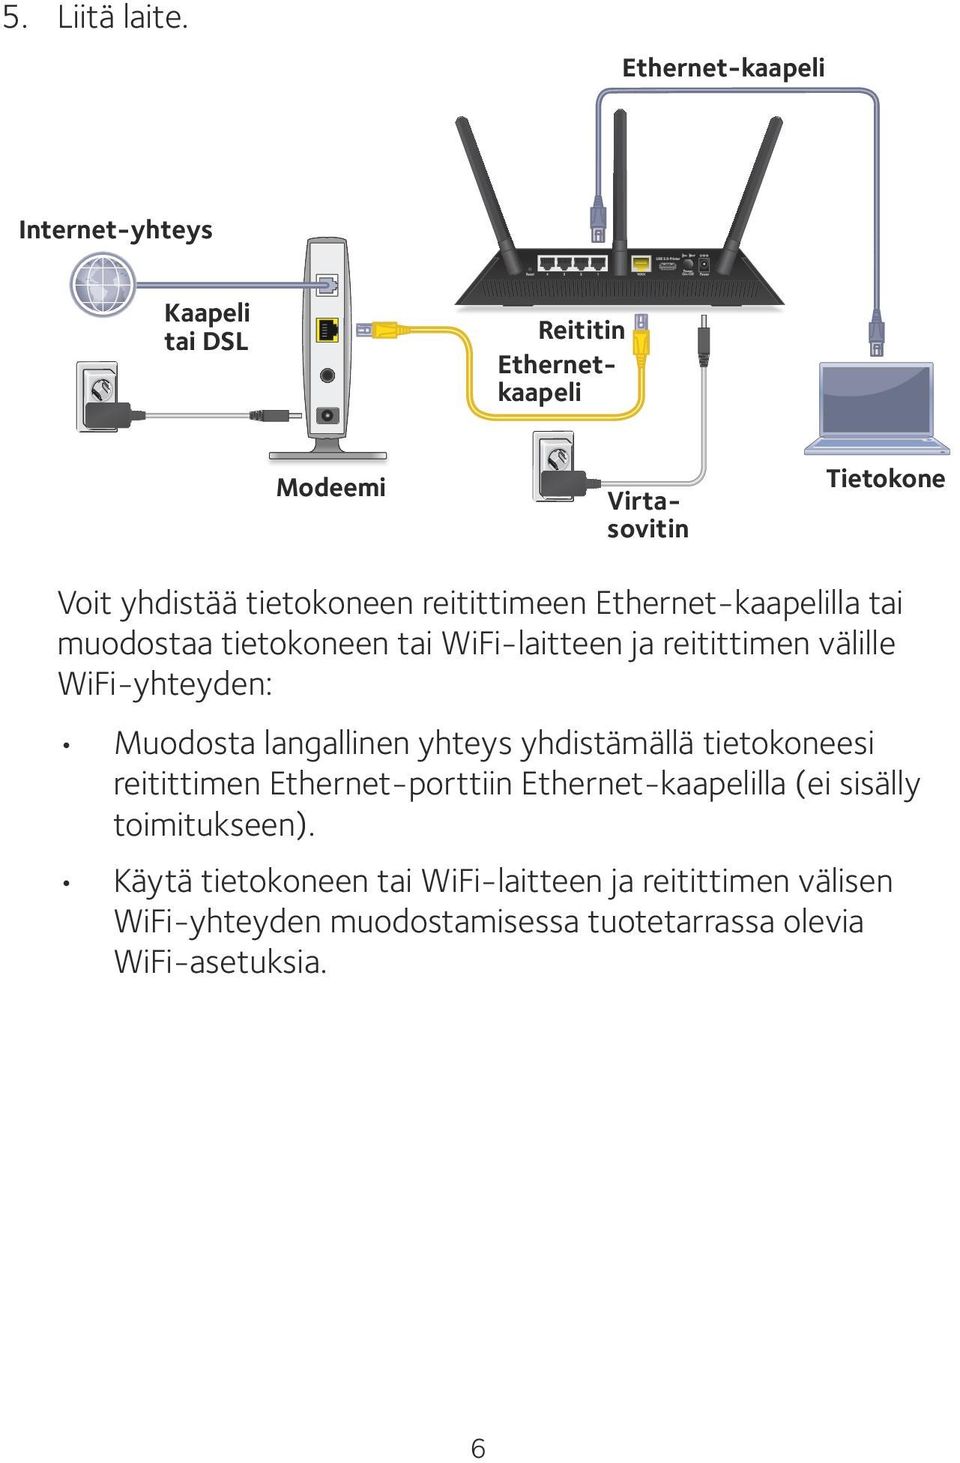 tietokoneen reitittimeen Ethernet-kaapelilla tai muodostaa tietokoneen tai WiFi-laitteen ja reitittimen välille WiFi-yhteyden: